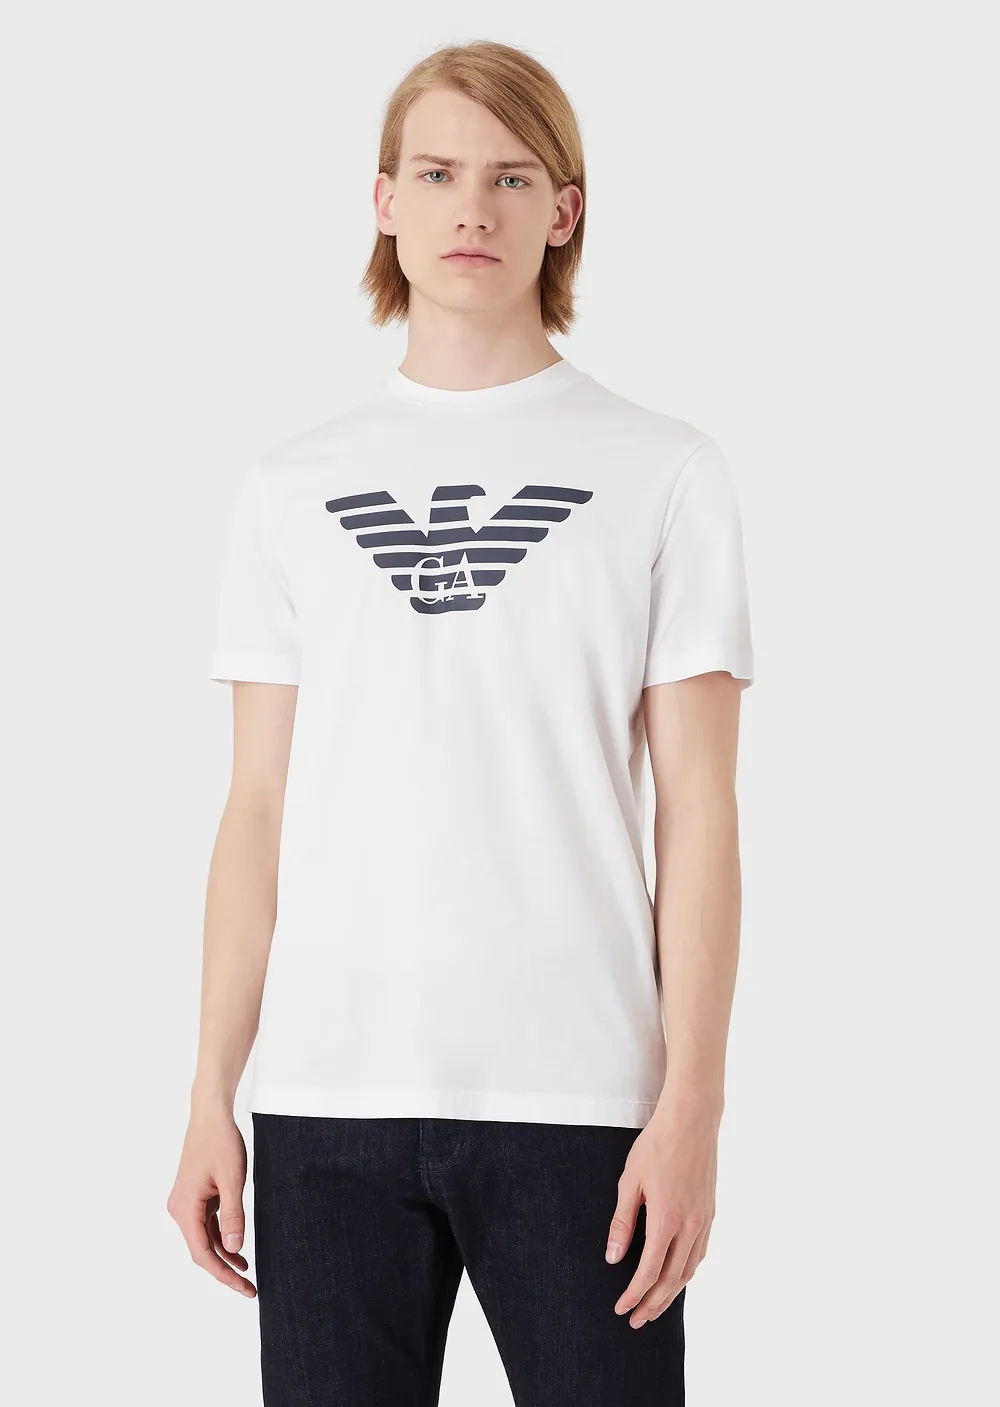 T-Shirt Emporio Armani in Pima / Bianco - Ideal Moda